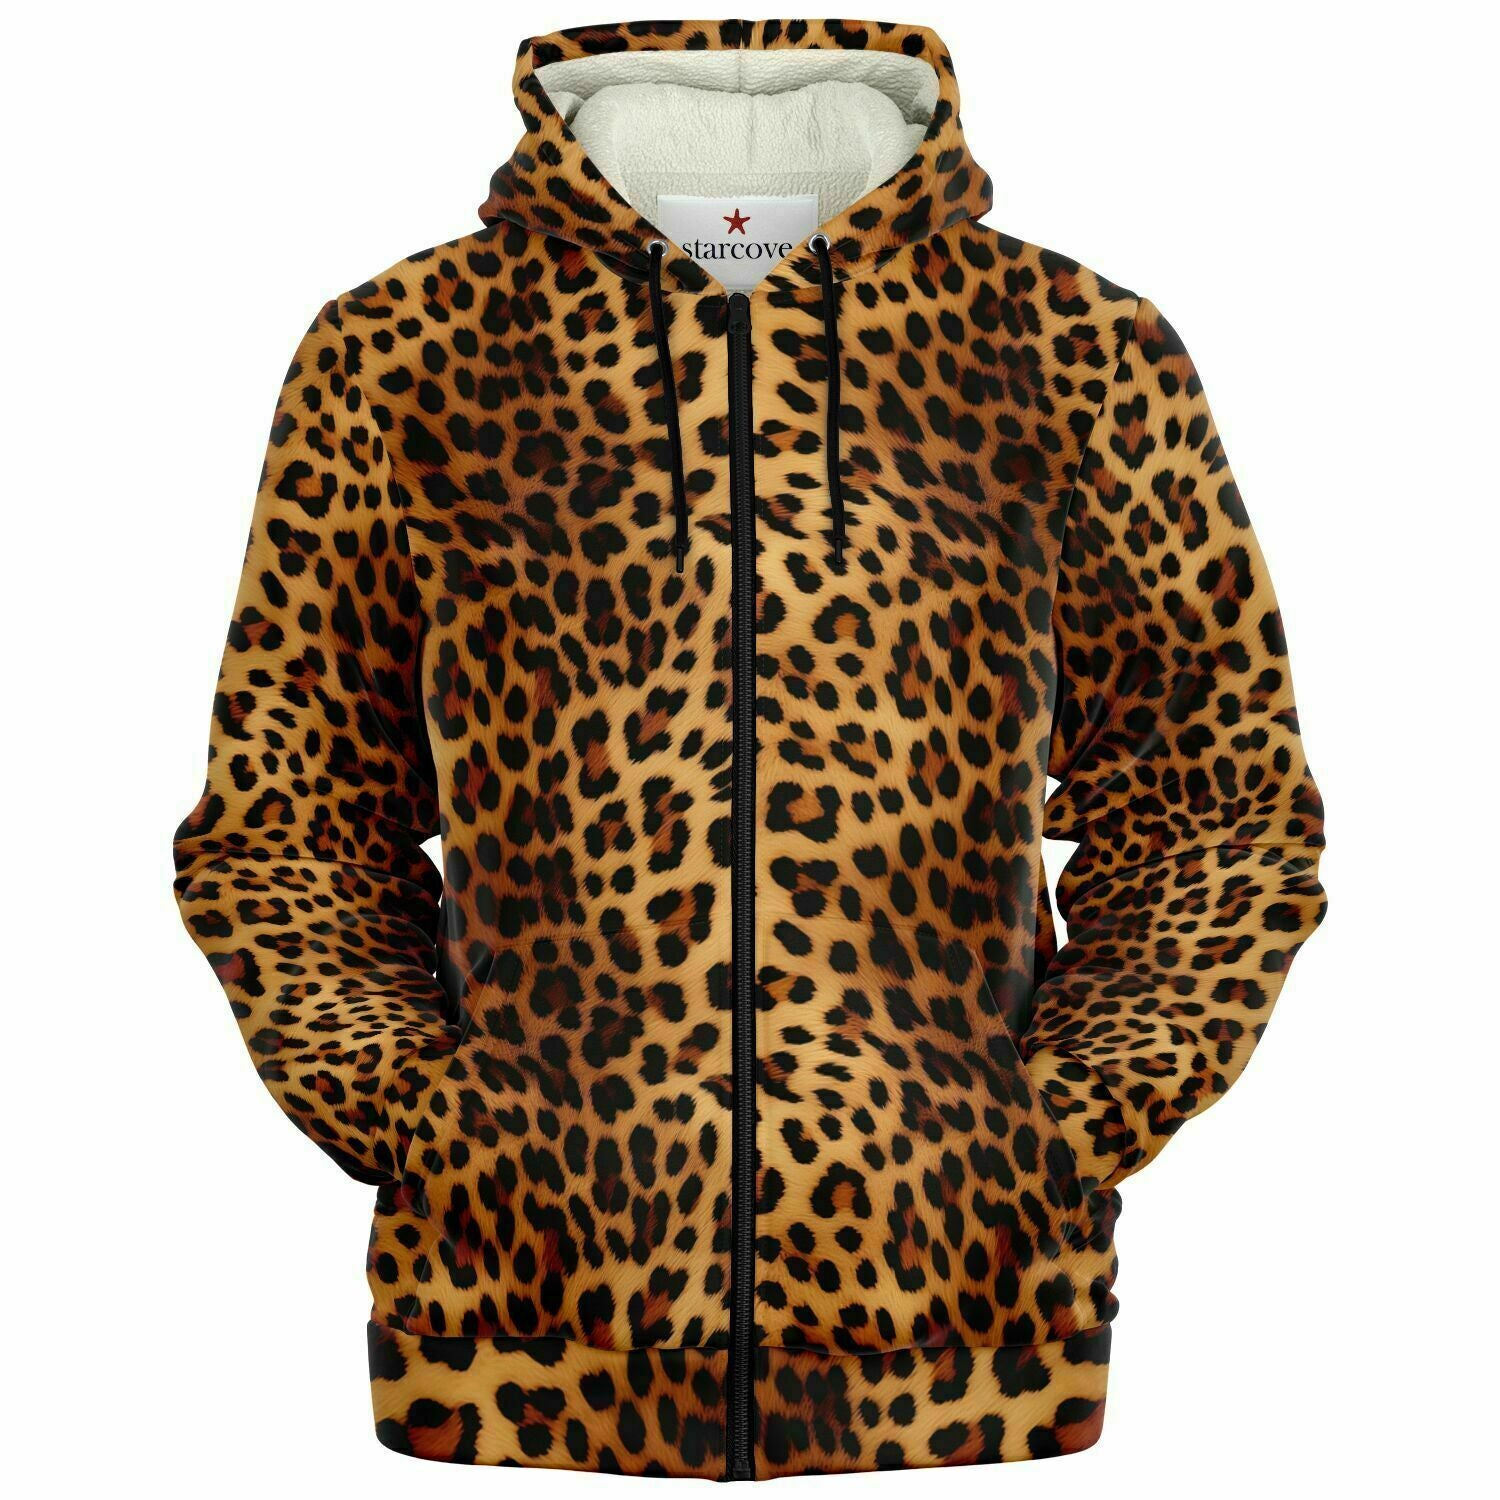 Leopard Zip Up Fleece Lined Hoodie, Animal Print Cheetah Full Zipper Pocket  Men Women Unisex Adult Aesthetic Graphic Hooded Sweatshirt